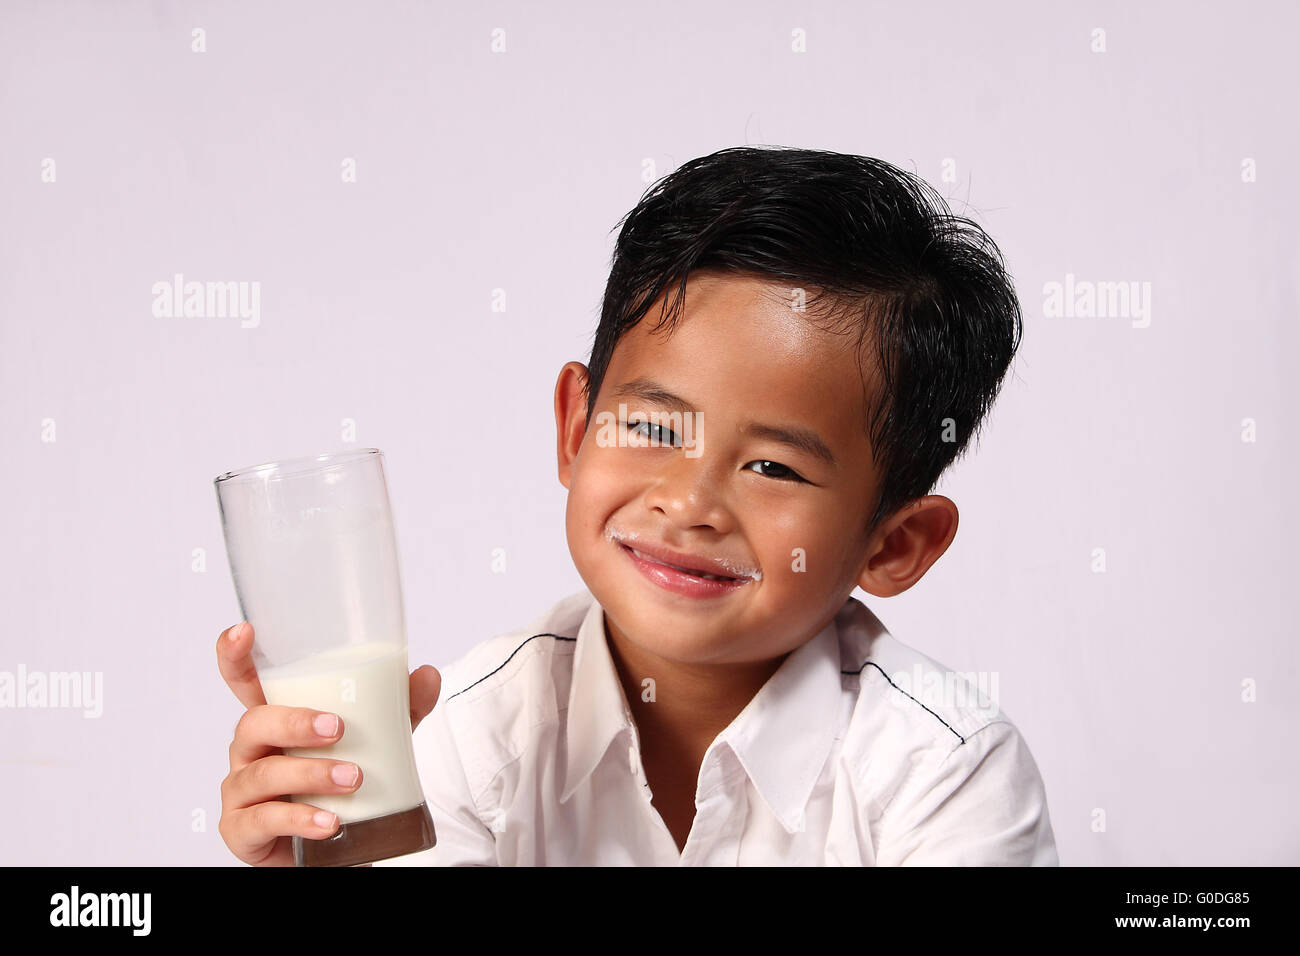 Felice e sorridente ragazzo asiatico che mostra un bicchiere di latte Foto Stock